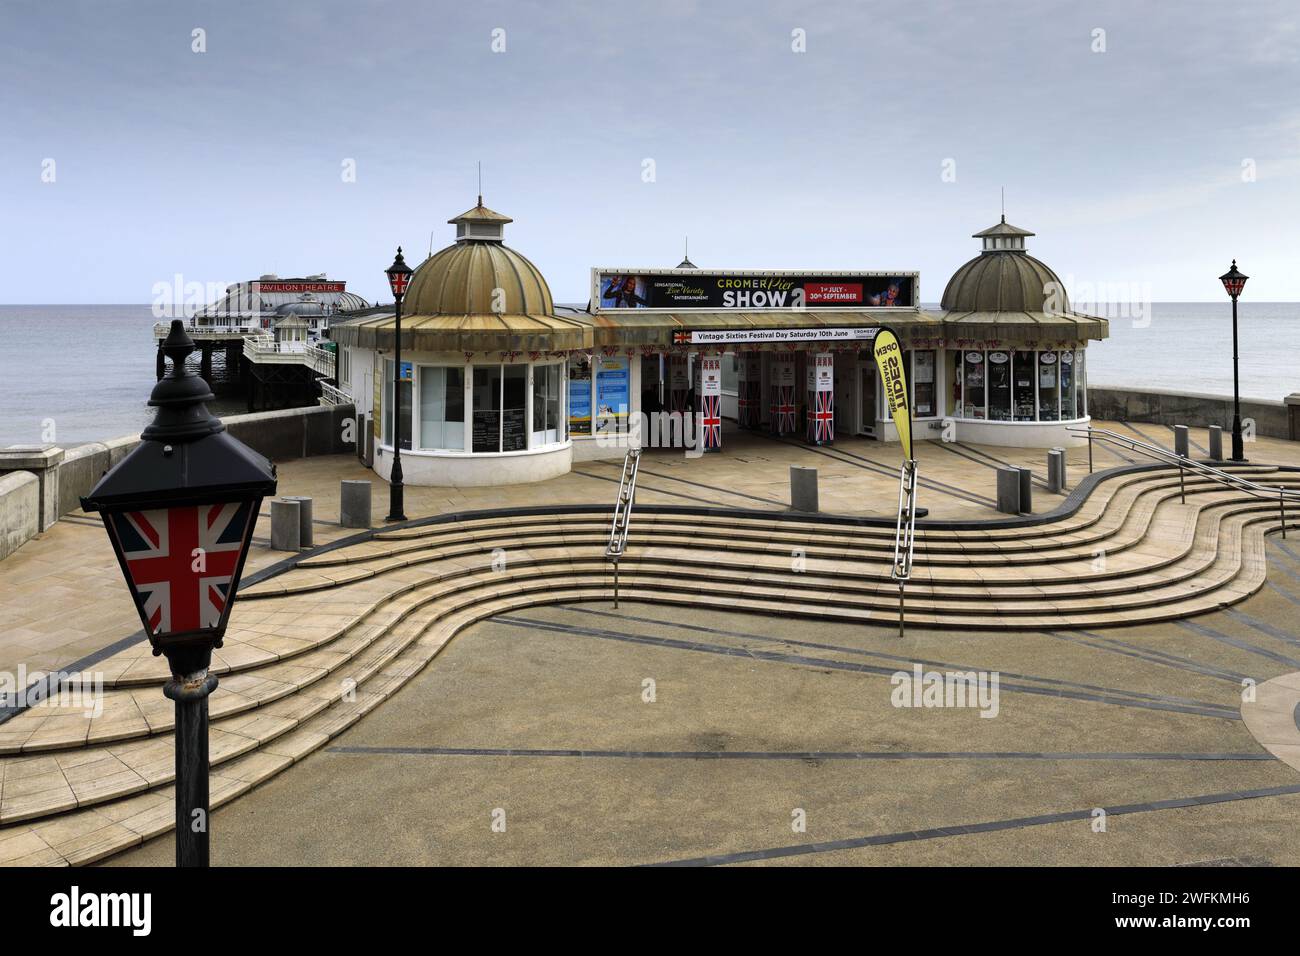 La promenade et Pavilion Theatre Pier à Cromer Town, North Norfolk Coast, Angleterre, Royaume-Uni Banque D'Images